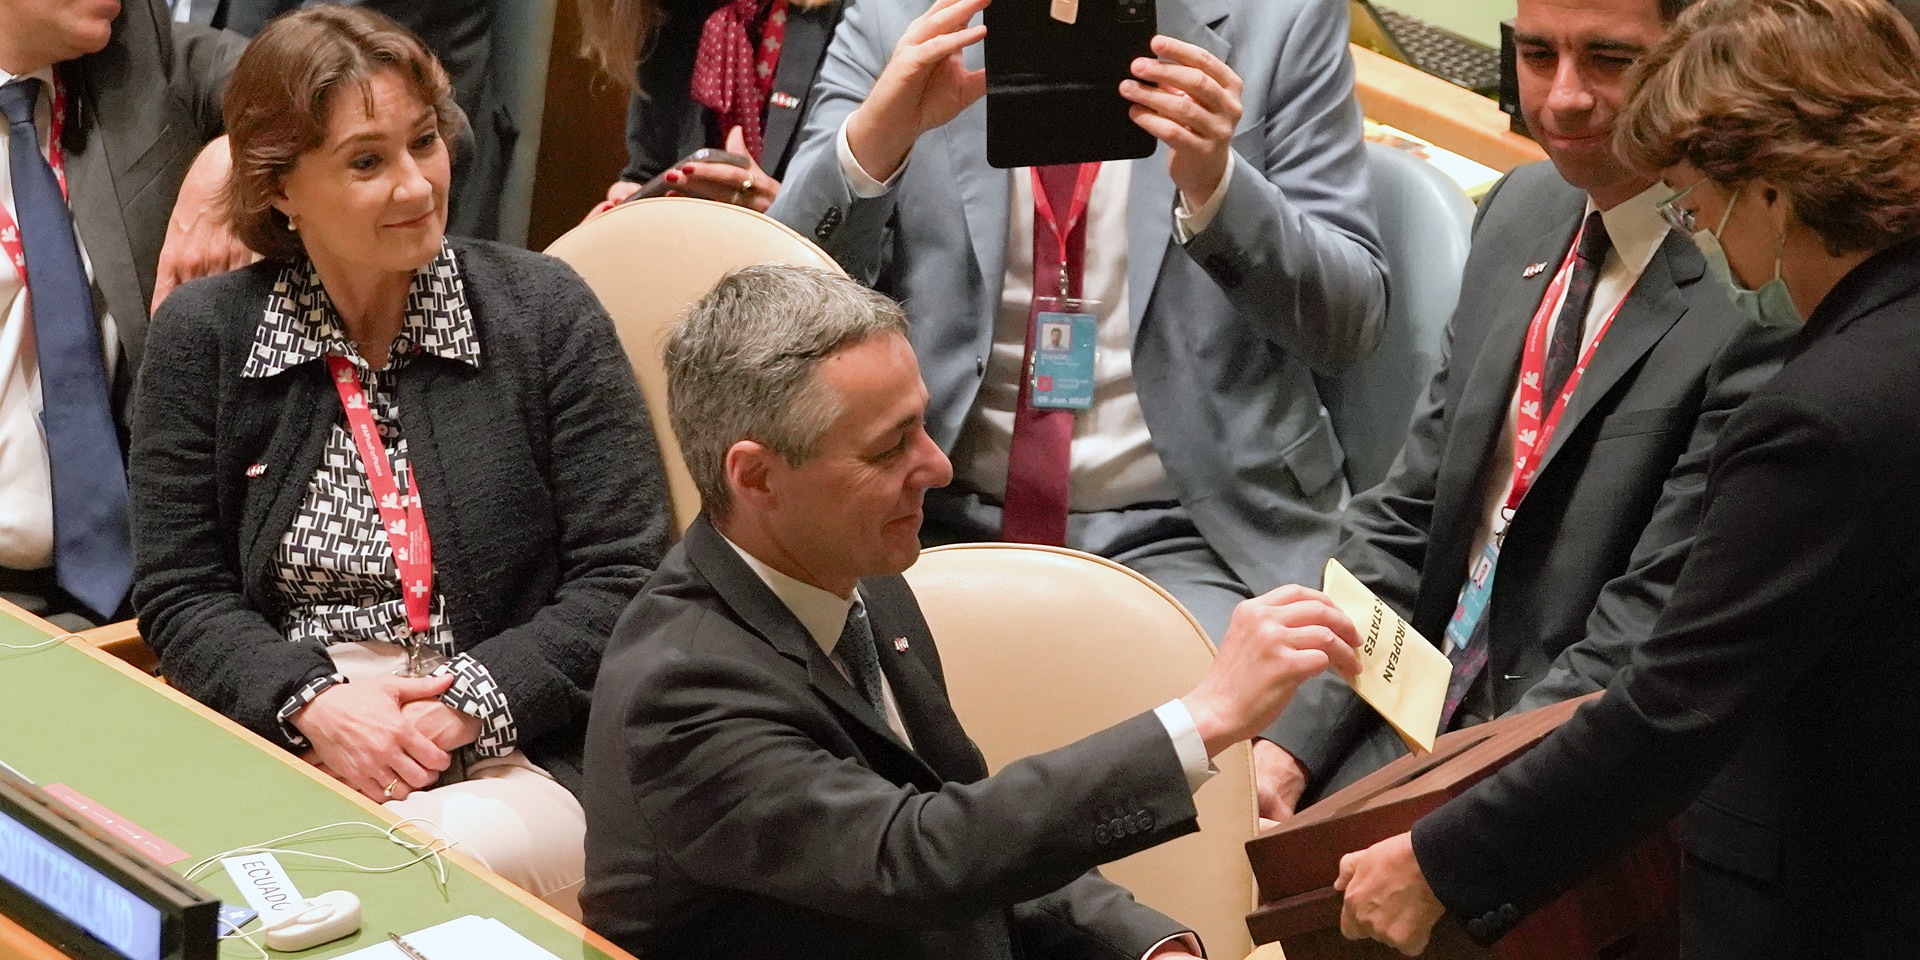 Bundespräsident Ignazio Cassis bei der Abgabe seiner Stimme in der UNO-Generalversammlung in New York.